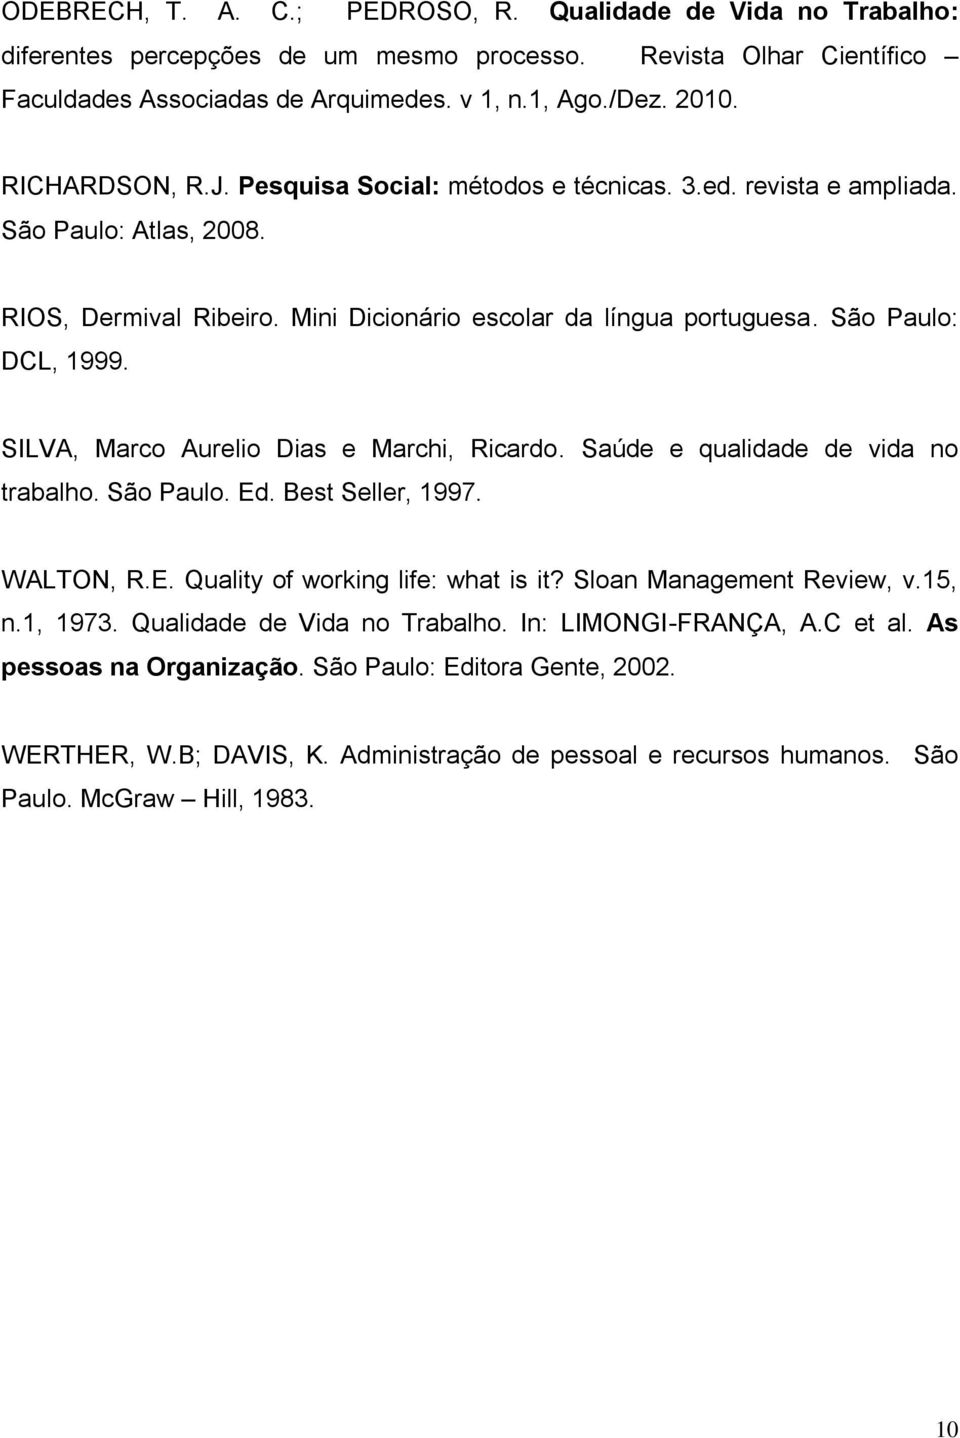 SILVA, Marco Aurelio Dias e Marchi, Ricardo. Saúde e qualidade de vida no trabalho. São Paulo. Ed. Best Seller, 1997. WALTON, R.E. Quality of working life: what is it? Sloan Management Review, v.